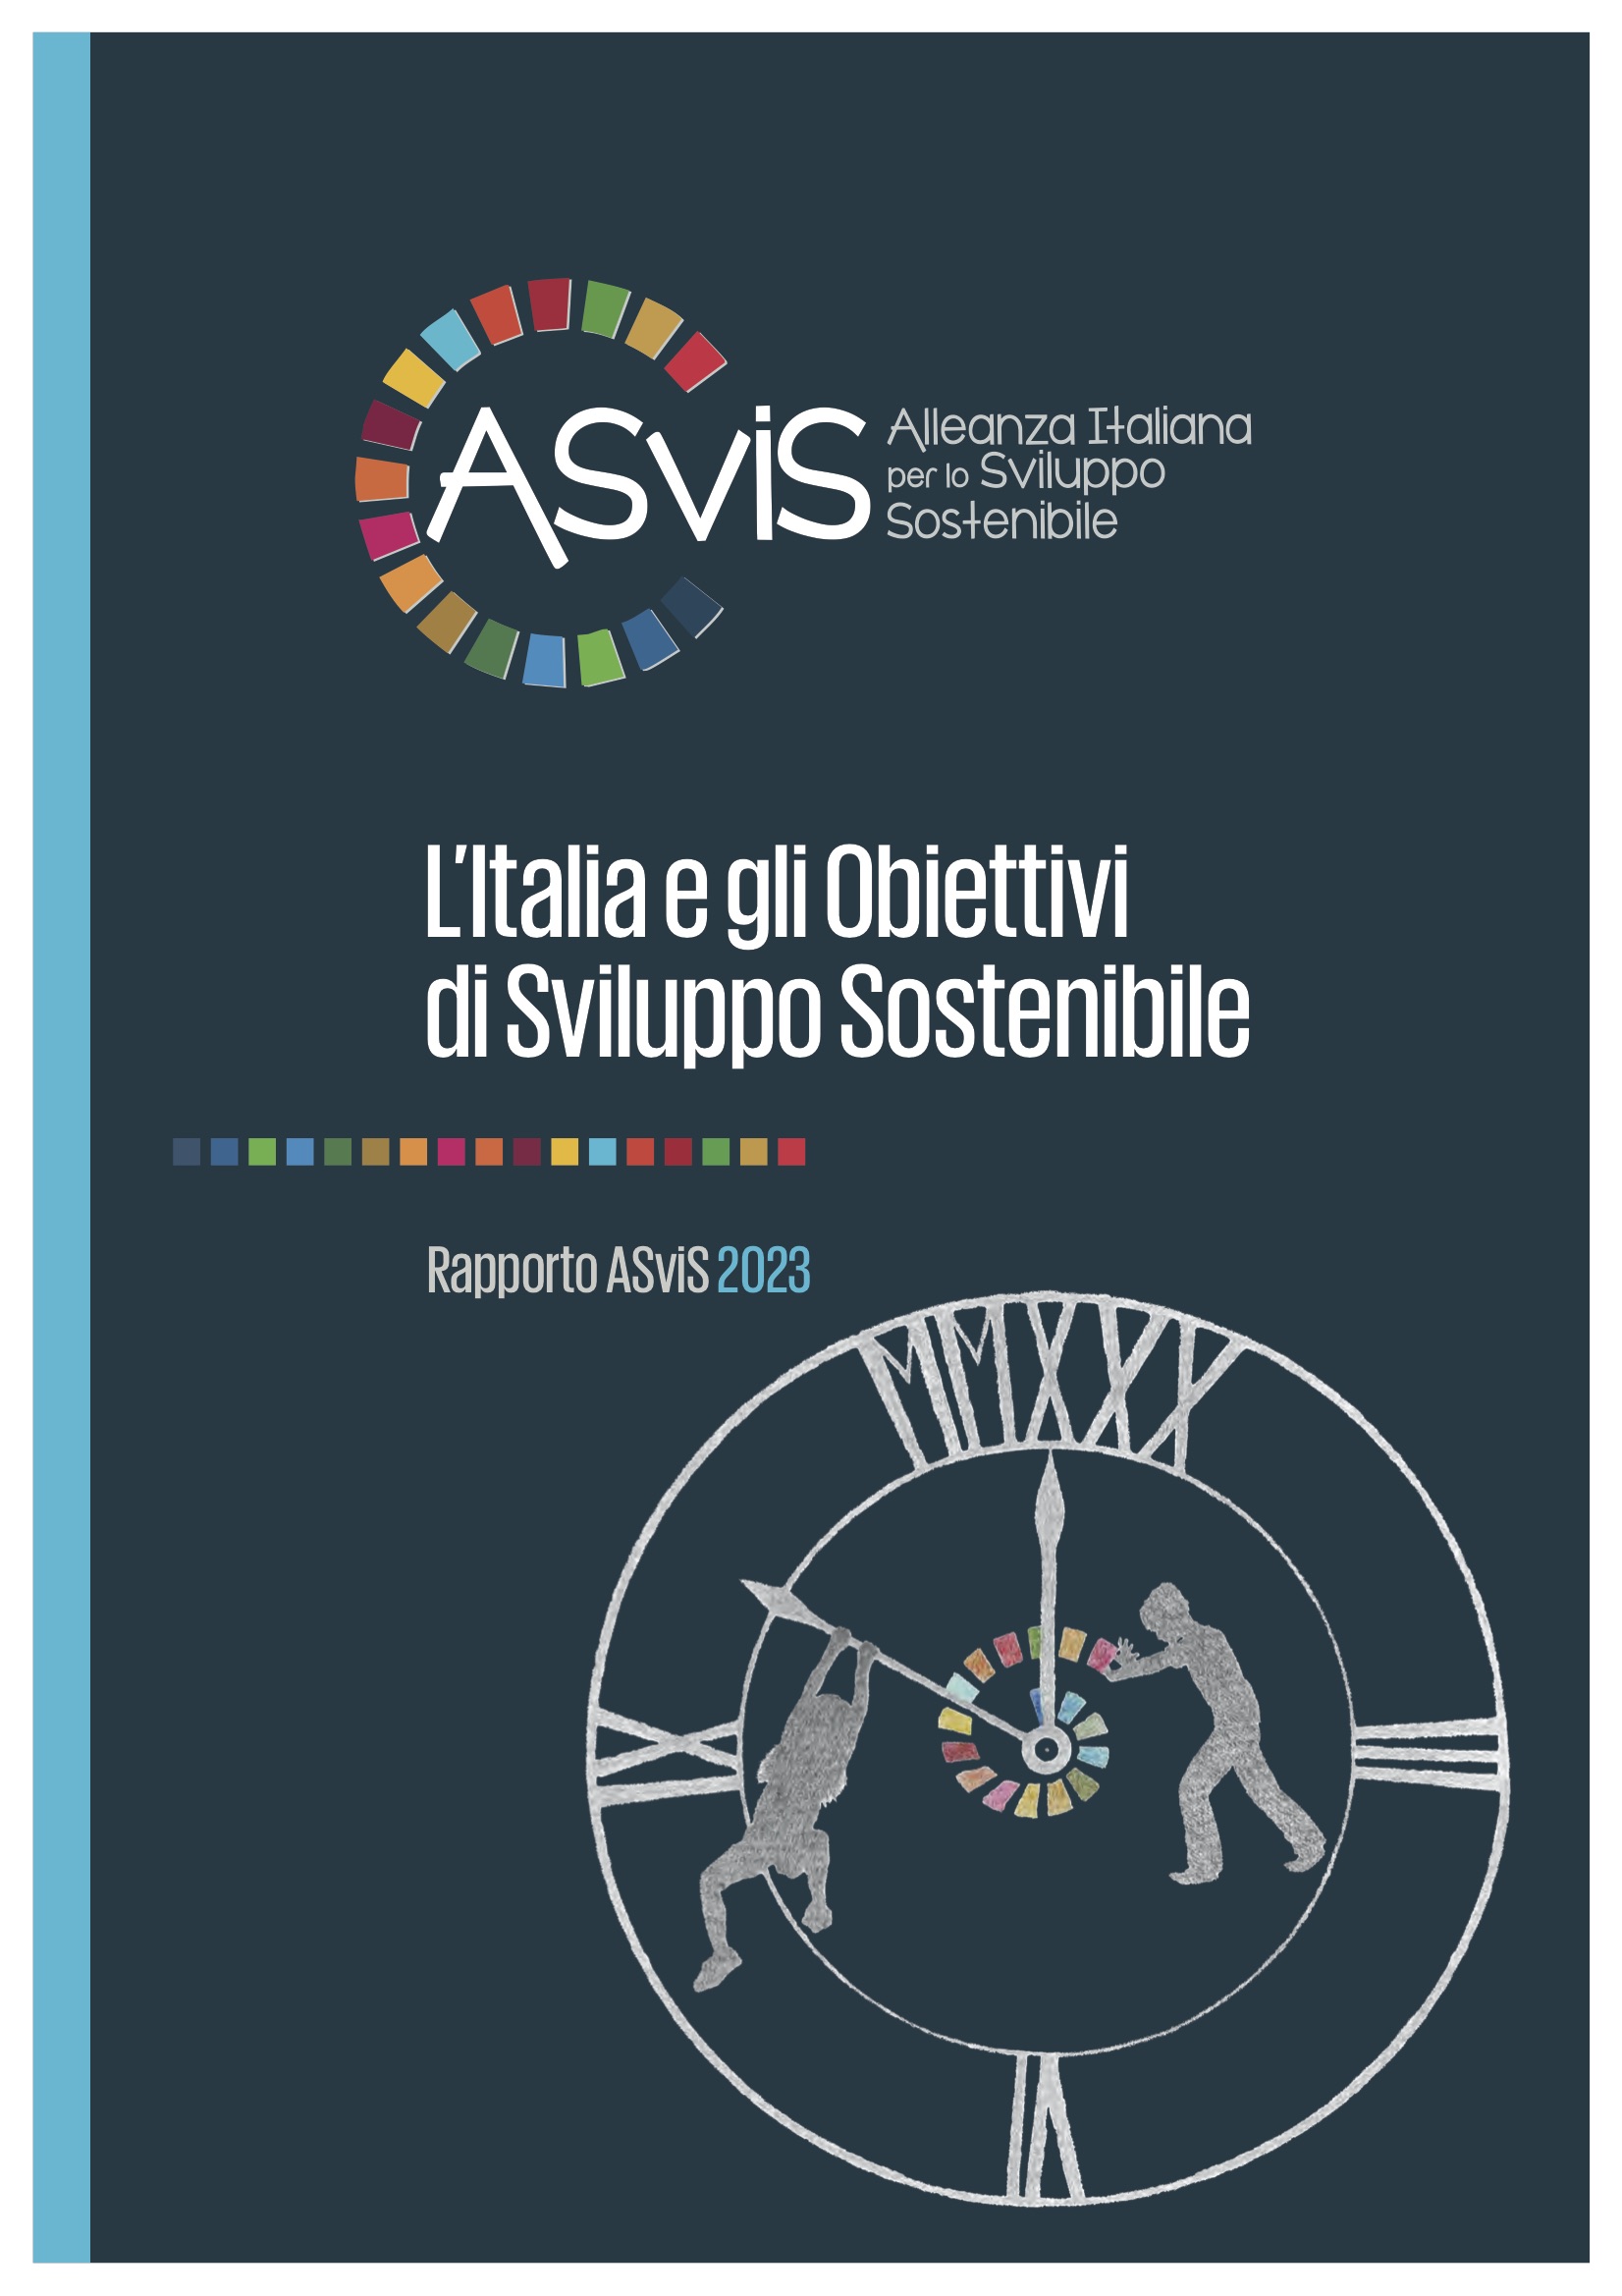 Copertina VIII Rapporto LItalia e lo sviluppo sostenibile 2023 ASVIS